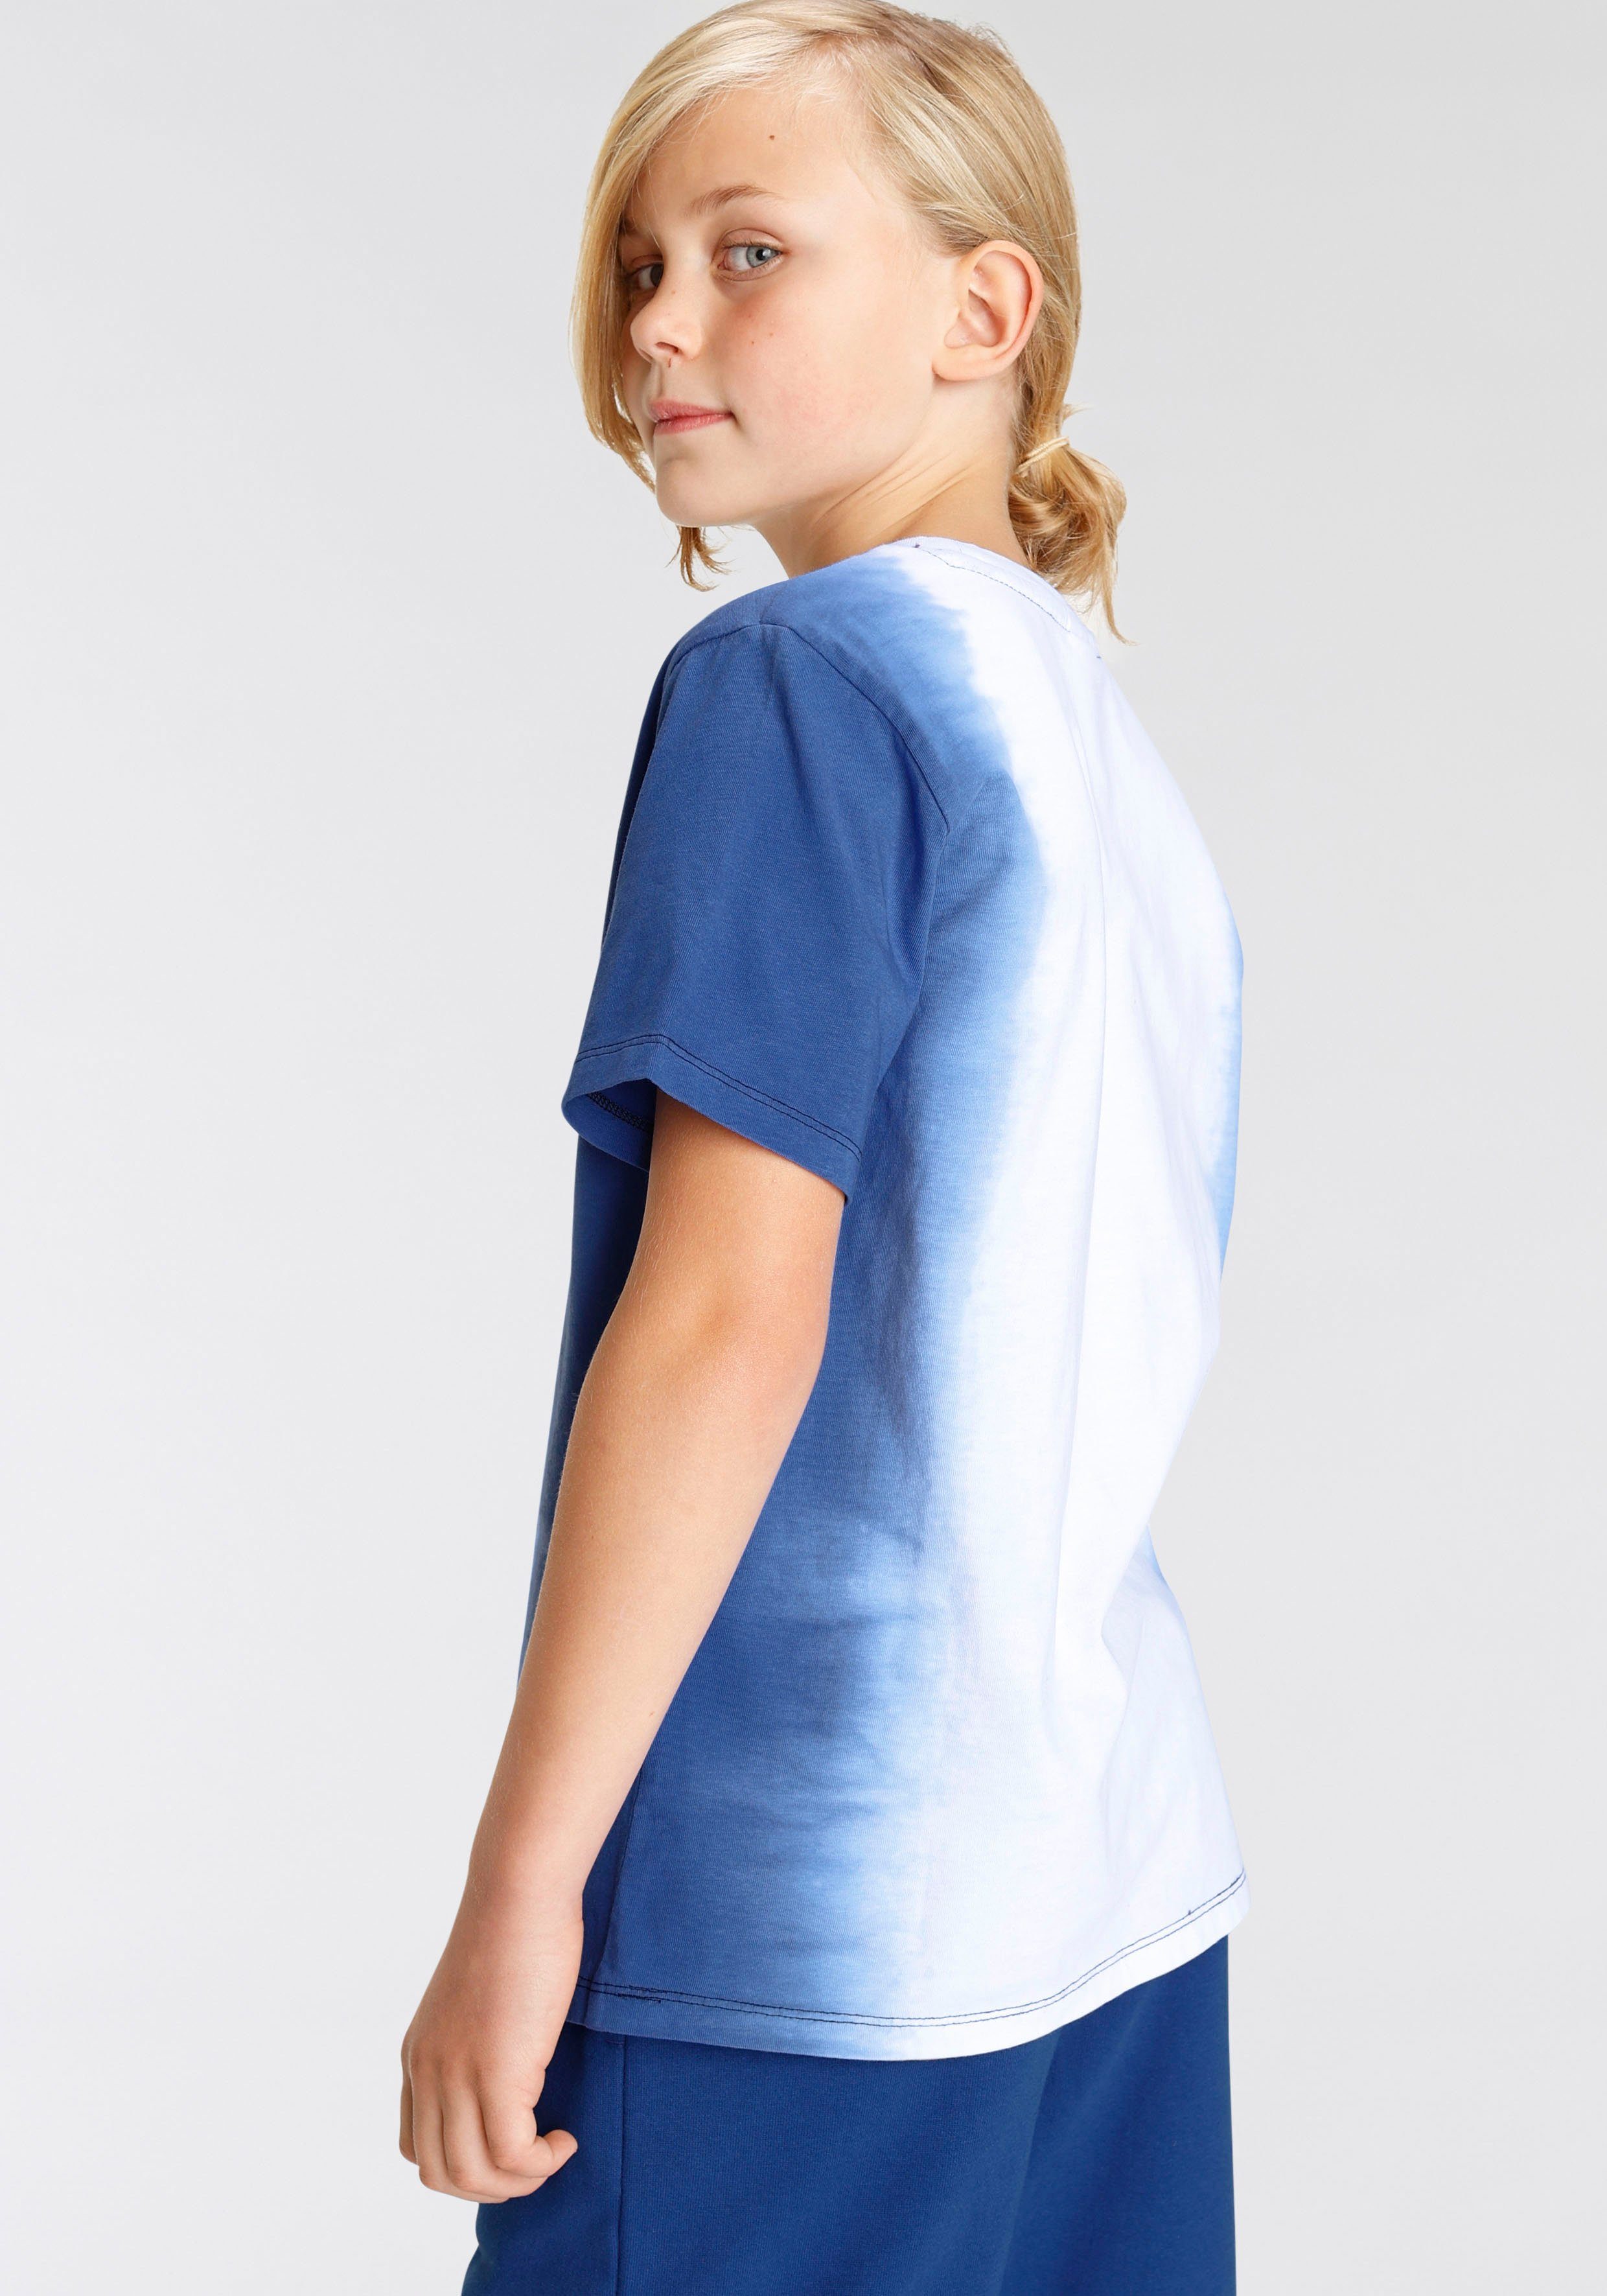 Dye Dip Farbverlauf coolem Chiemsee mit T-Shirt und Logodruck